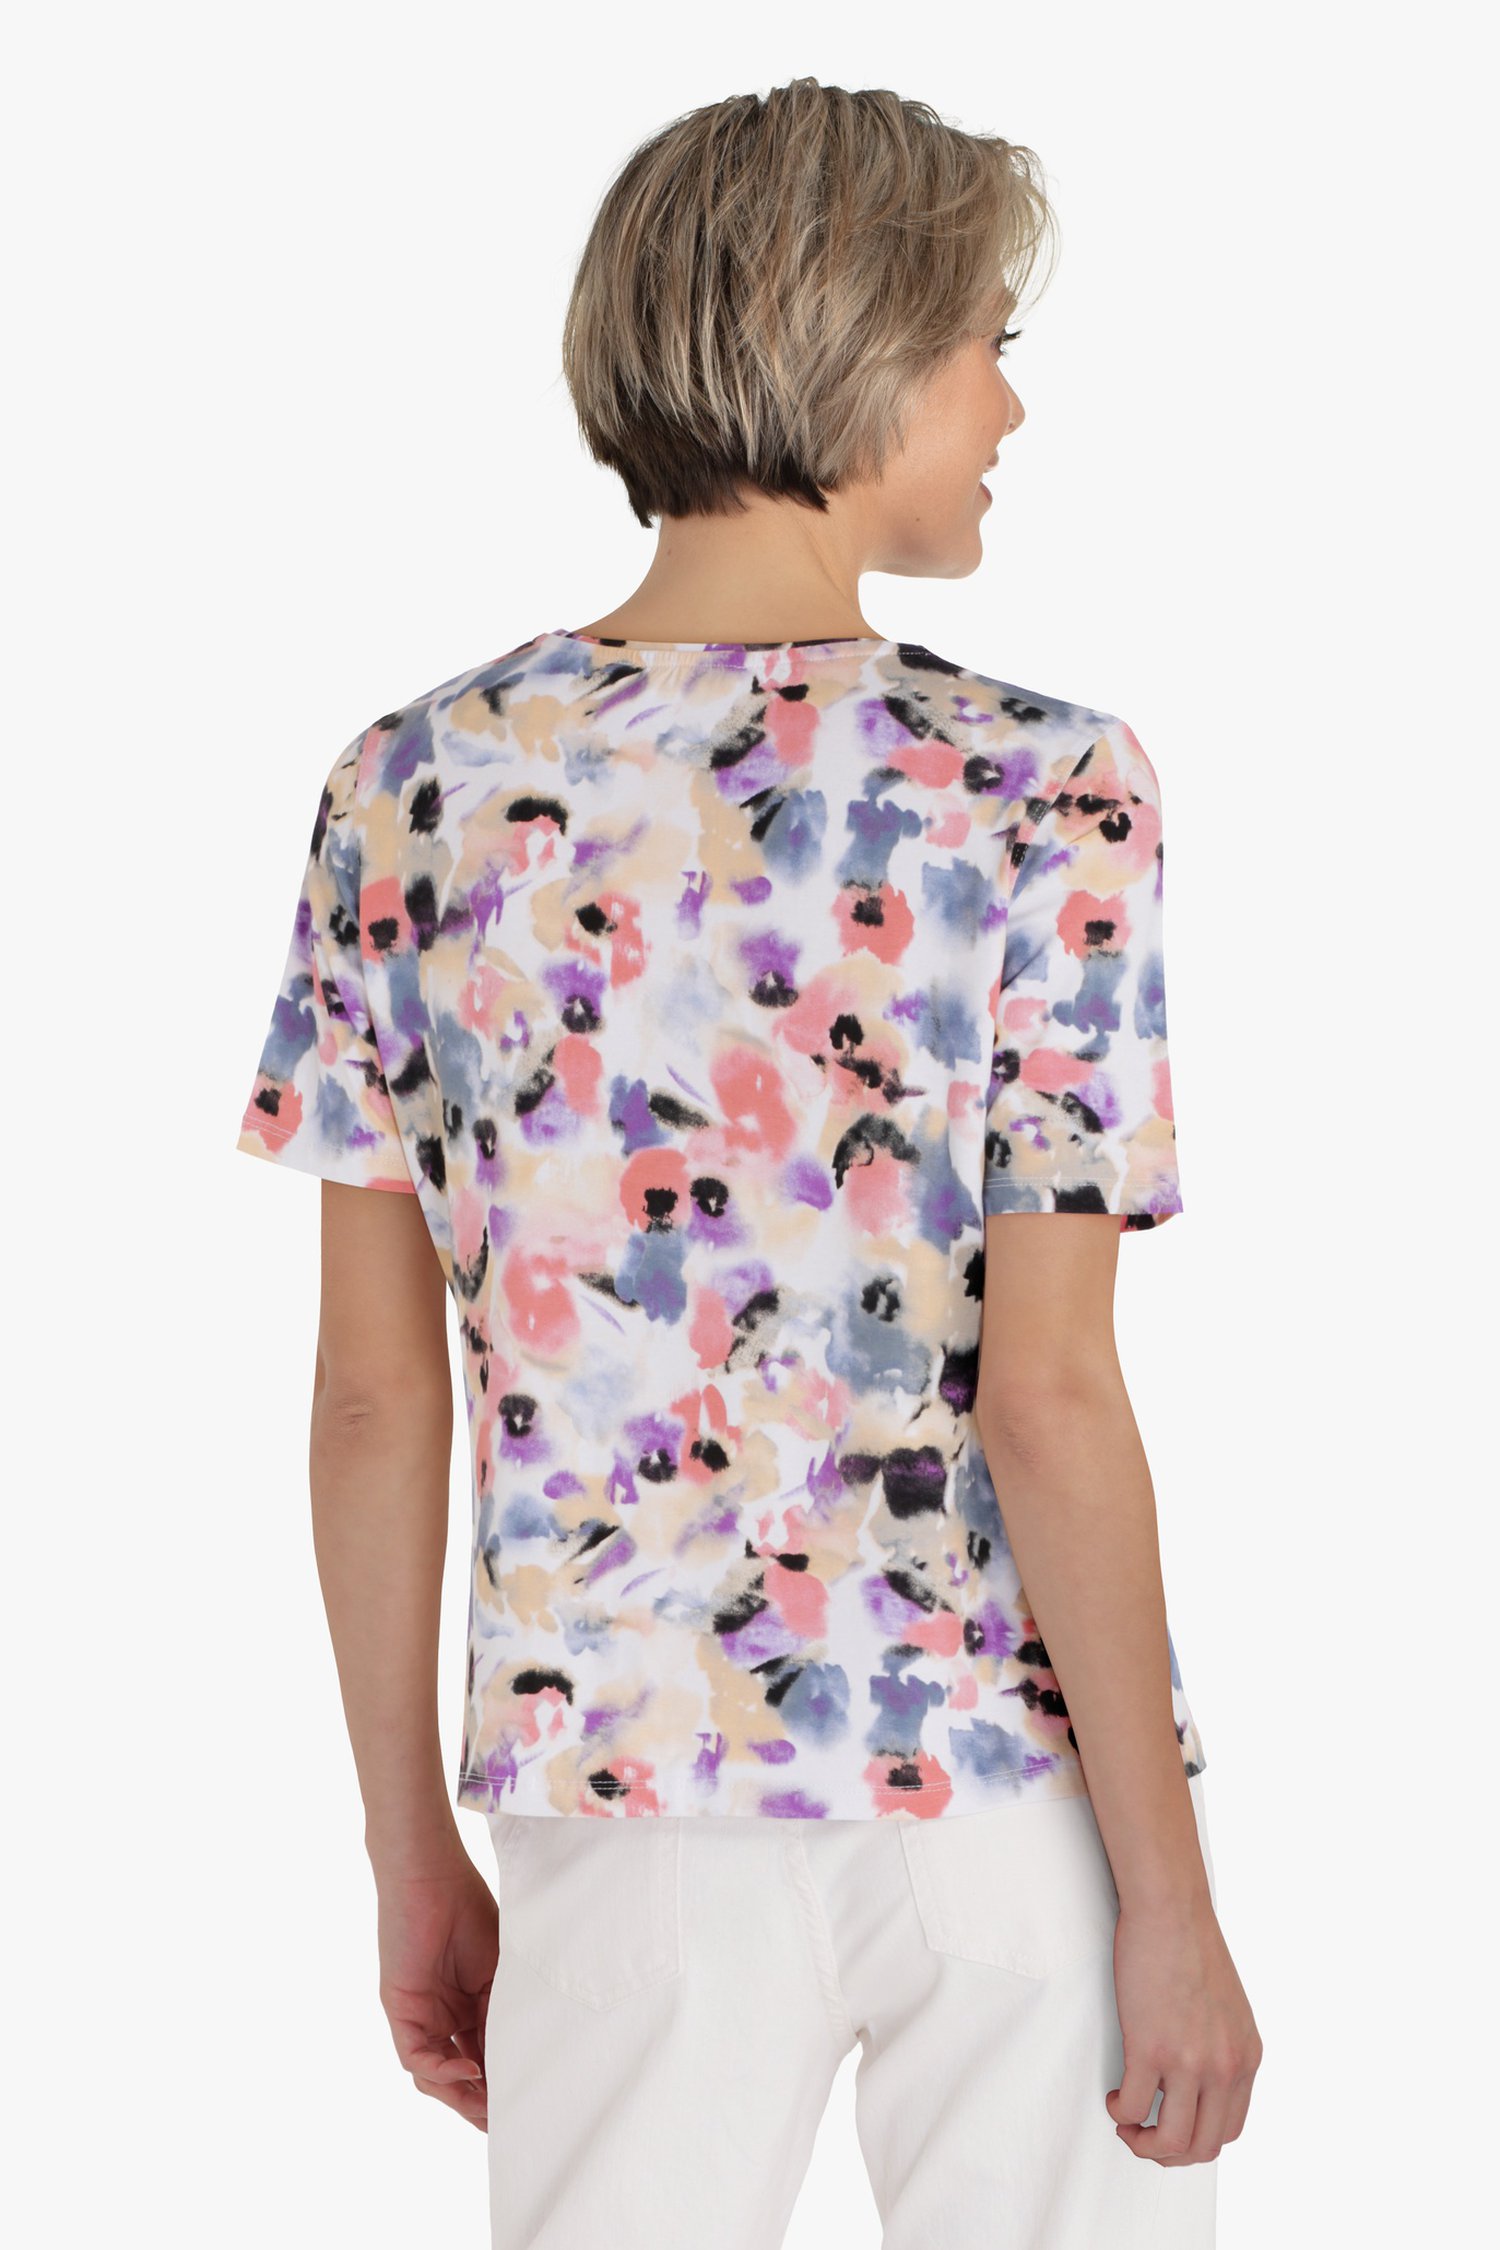 T-shirt in zachte pasteltinten van Bicalla voor Dames